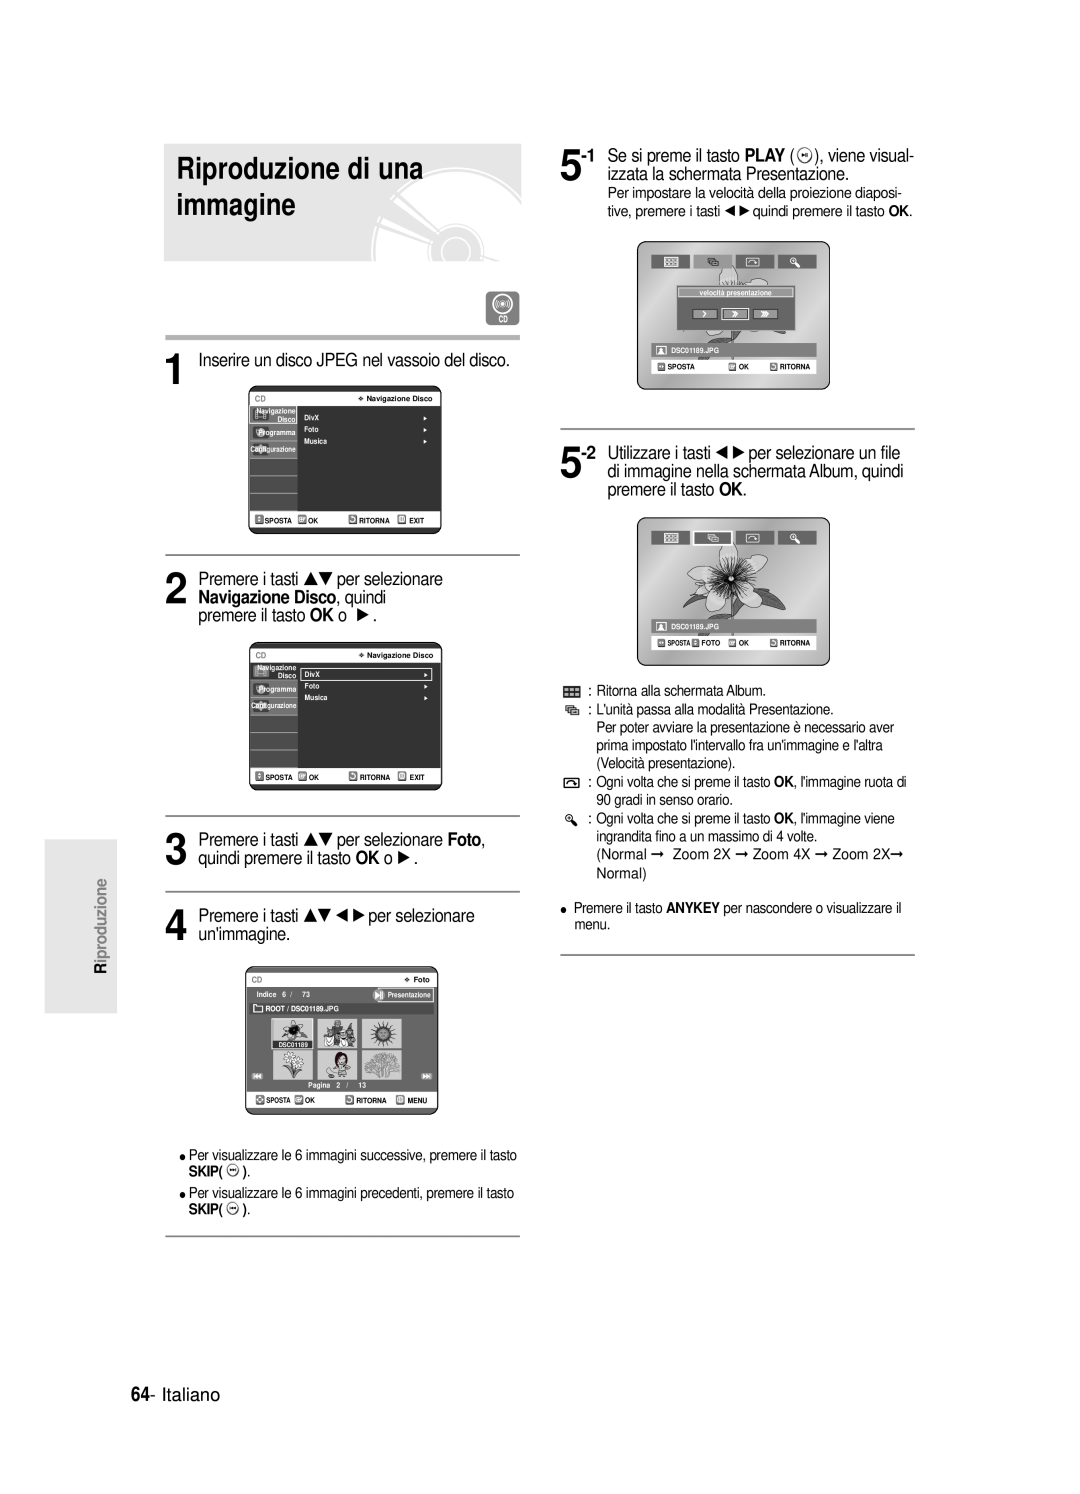 Samsung DVD-R121E/XEG, DVD-R120/AFS manual Riproduzione di una, immagine, izzata la schermata Presentazione, Italiano 